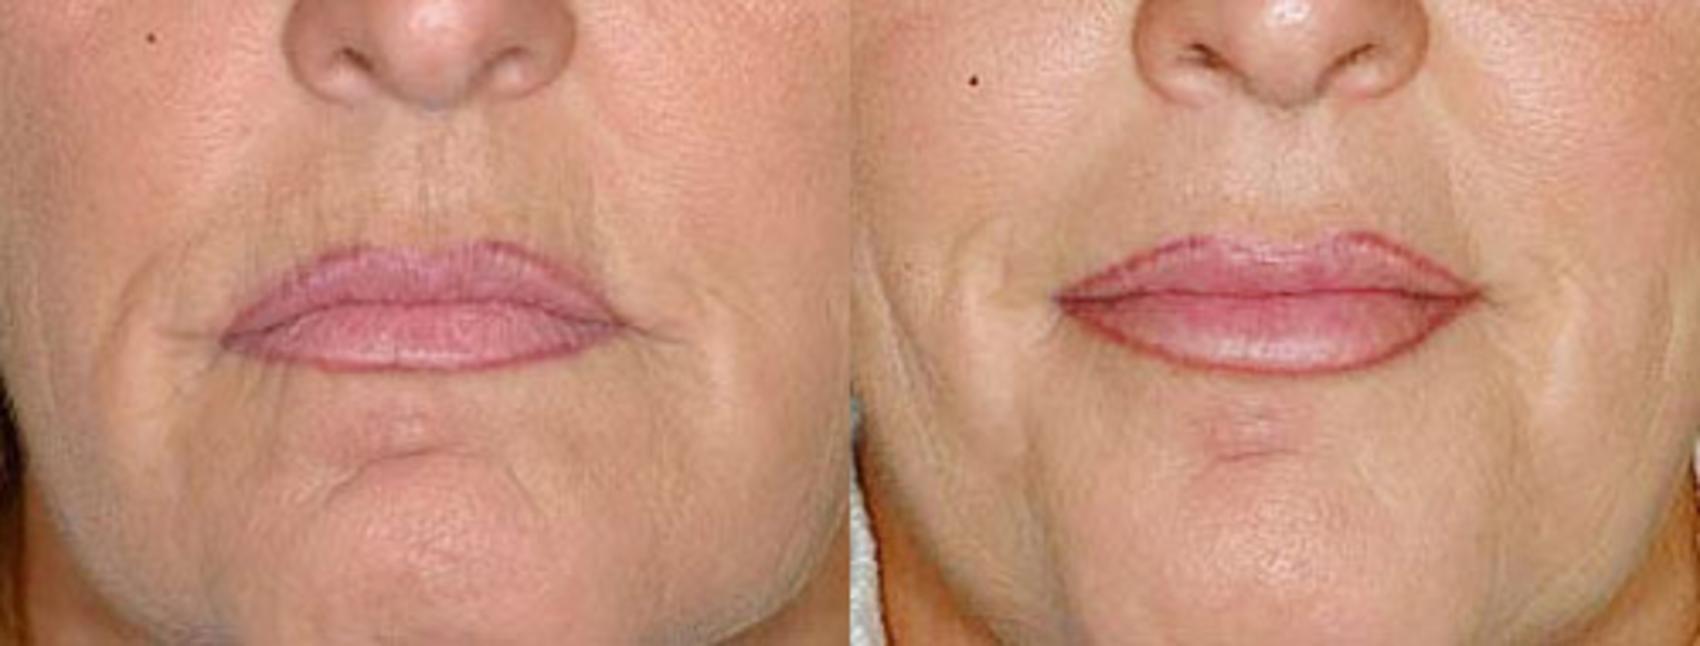 Lip Implants Case 94 Before & After View #1 | Louisville, KY | CaloSpa® Rejuvenation Center